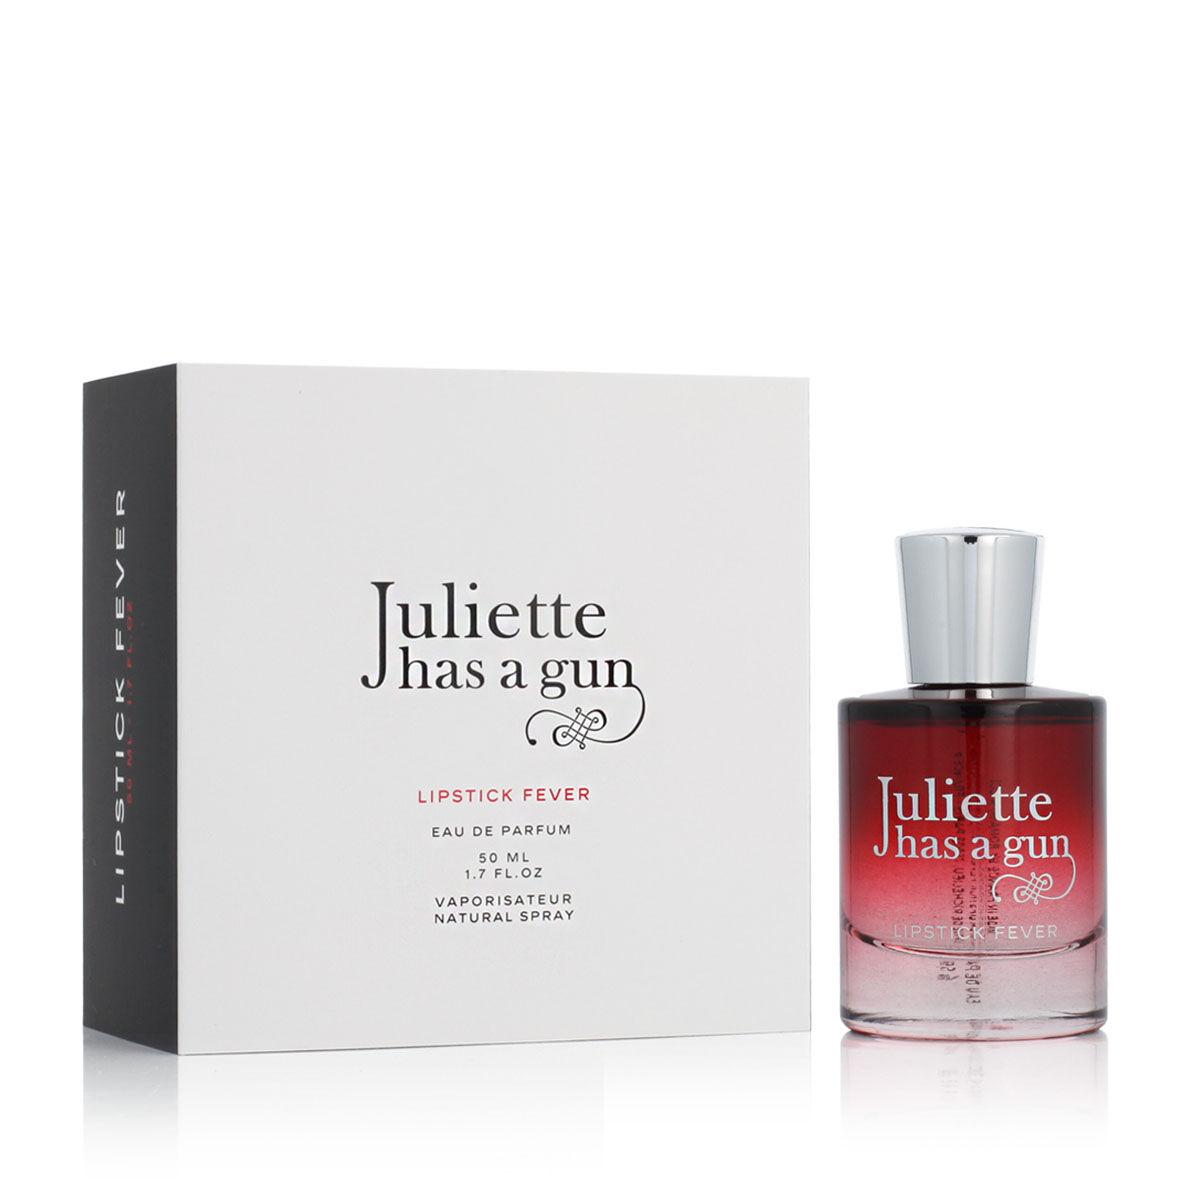 Dameparfume Juliette Has A Gun   EDP Lipstick Fever (50 ml)